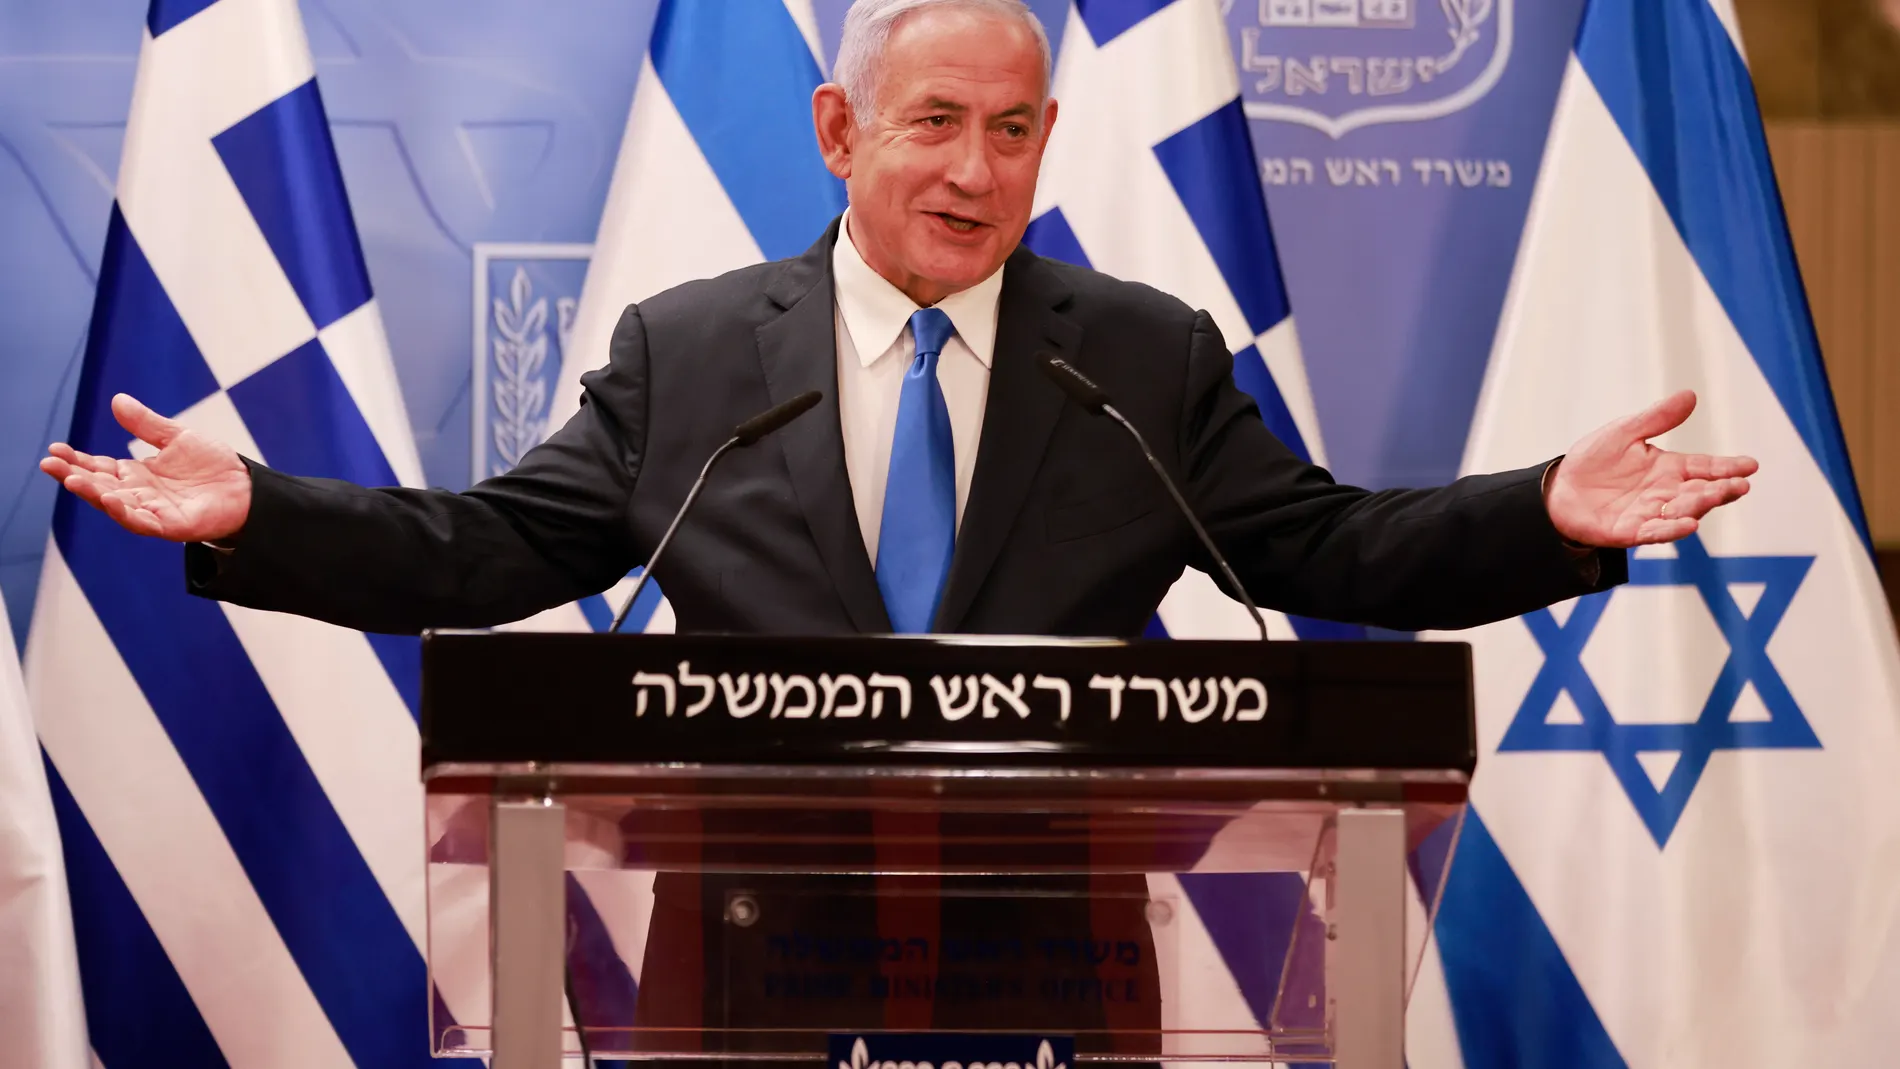 El primer ministro Benjamin Netanyahu durante una rueda de prensa conjunta con su homólogo greigo, Kyriakos Mitsotakis, después de su vista